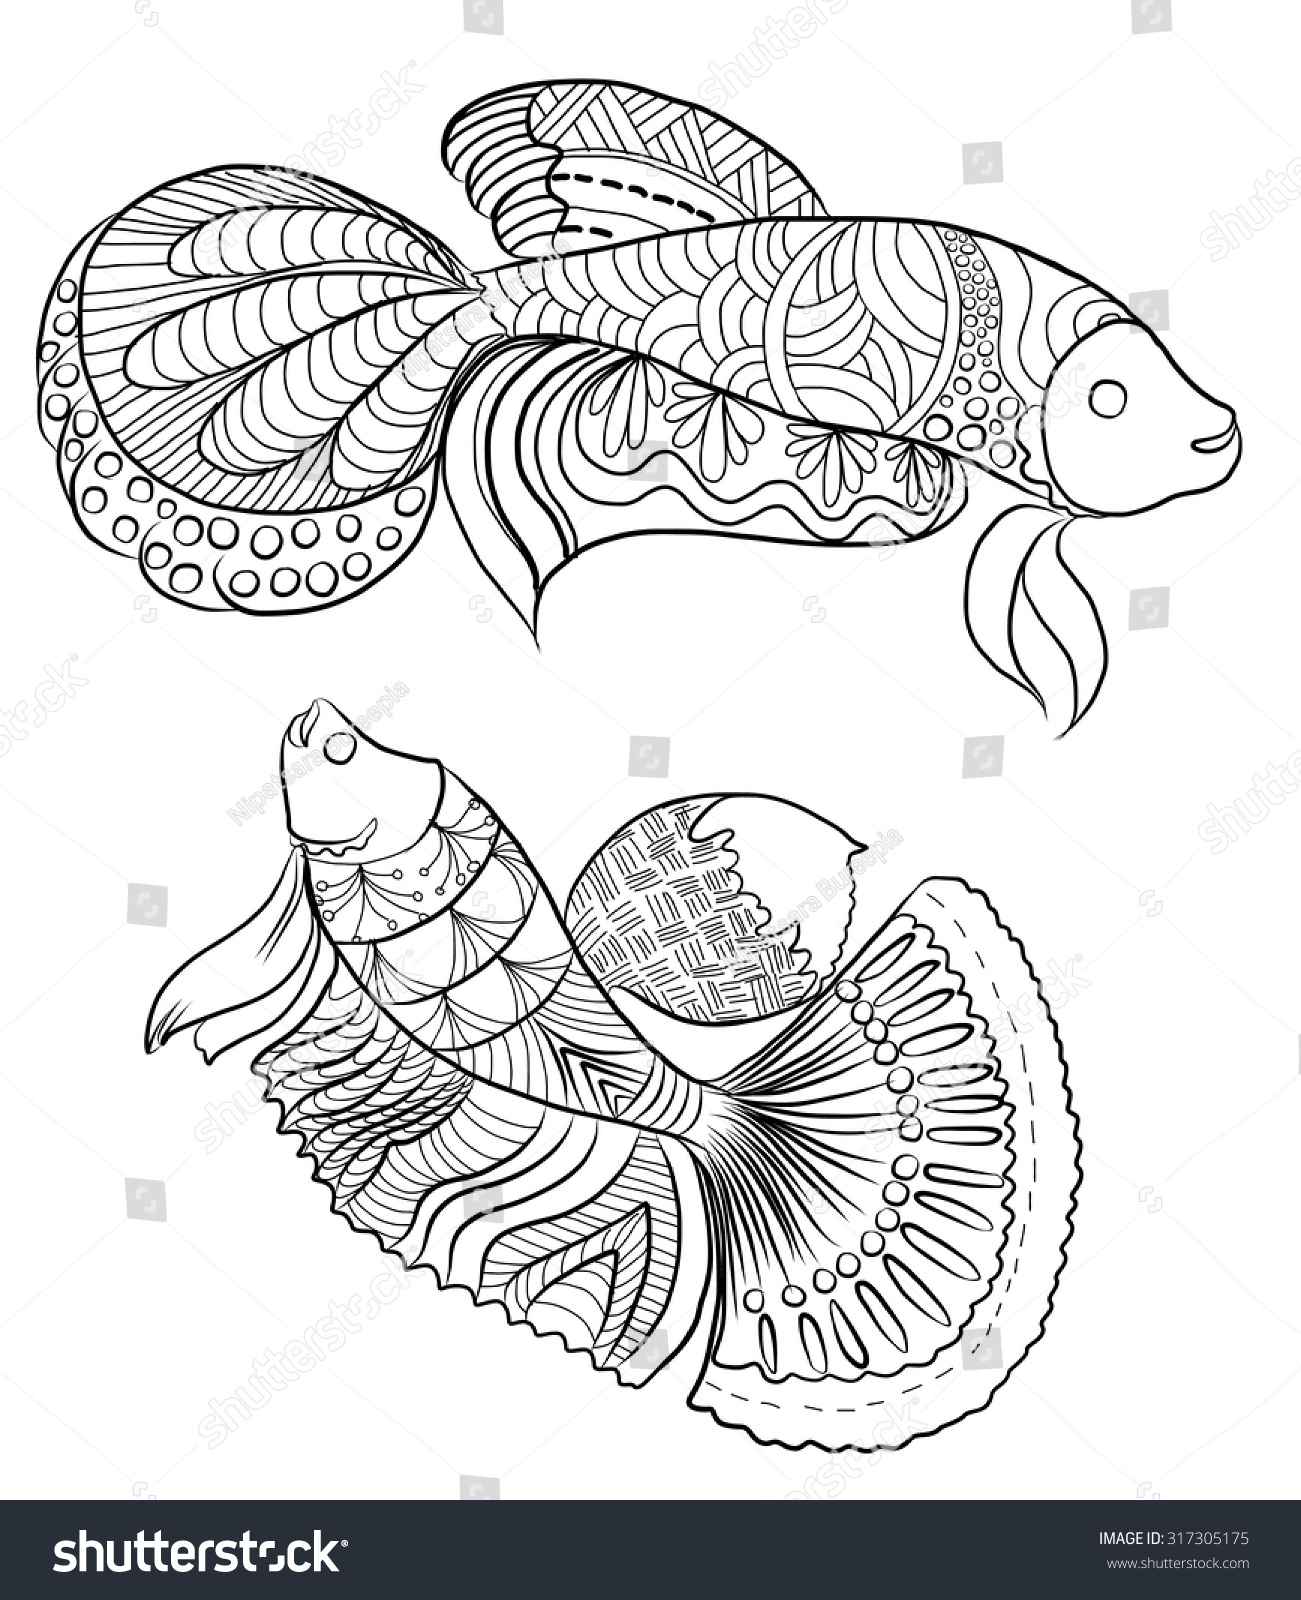 Kumpulan Doodle  Art Of Fish Doodlegaleri